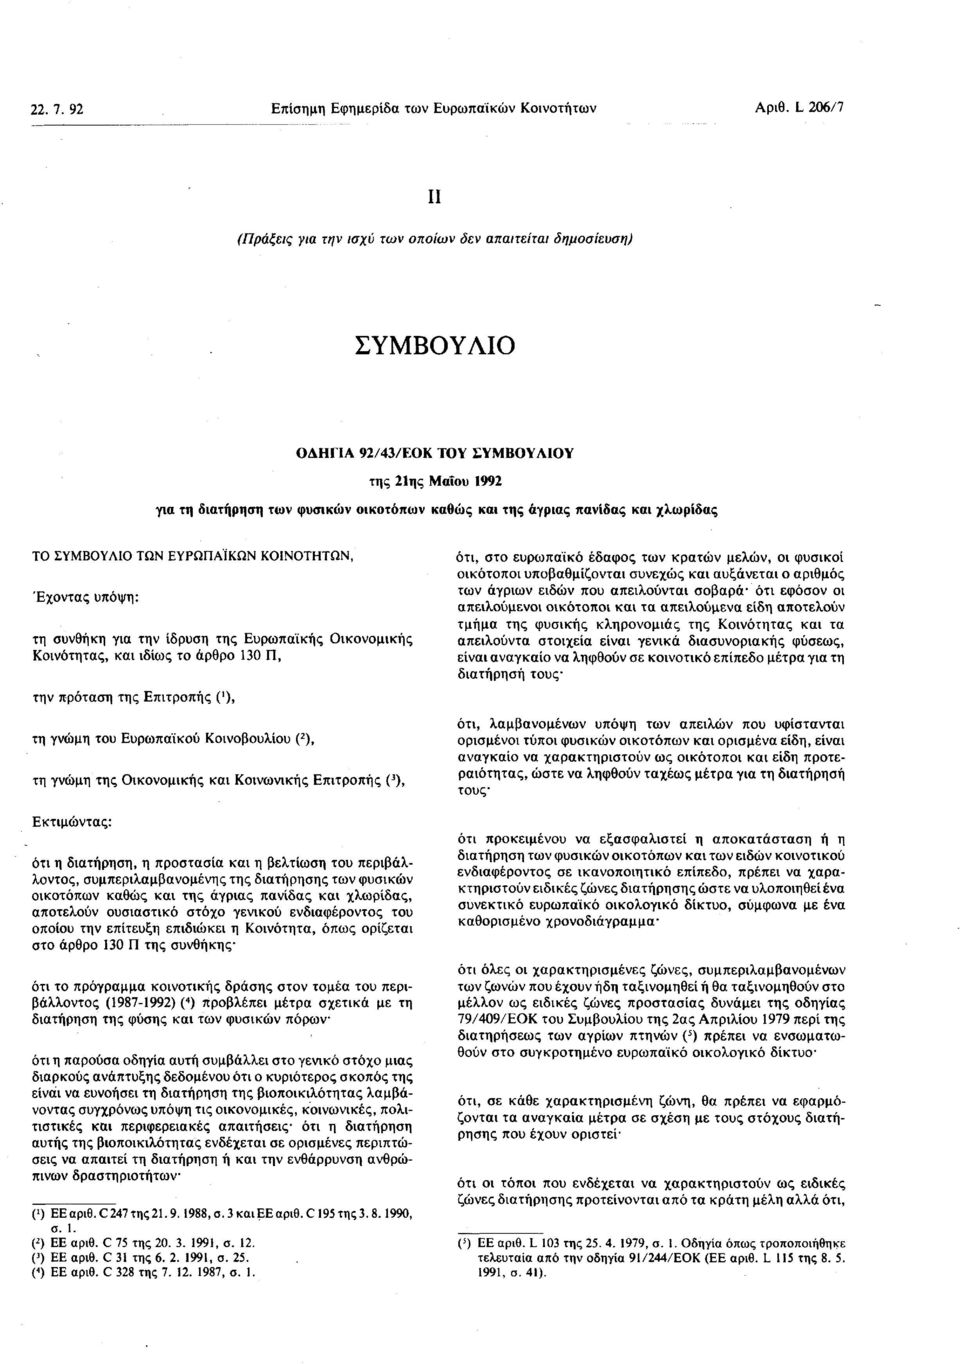 πανίδας και χλωρίδας ΤΟ ΣΥΜΒΟΥΛΙΟ ΤΩΝ ΕΥΡΩΠΑΪΚΩΝ ΚΟΙΝΟΤΗΤΩΝ, Έχοντας υπόψη : τη συνθήκη για την ίδρυση της Ευρωπαϊκής Οικονομικής Κοινότητας, και ιδίως το άρθρο 130 Π, την πρόταση της Επιτροπής ('),